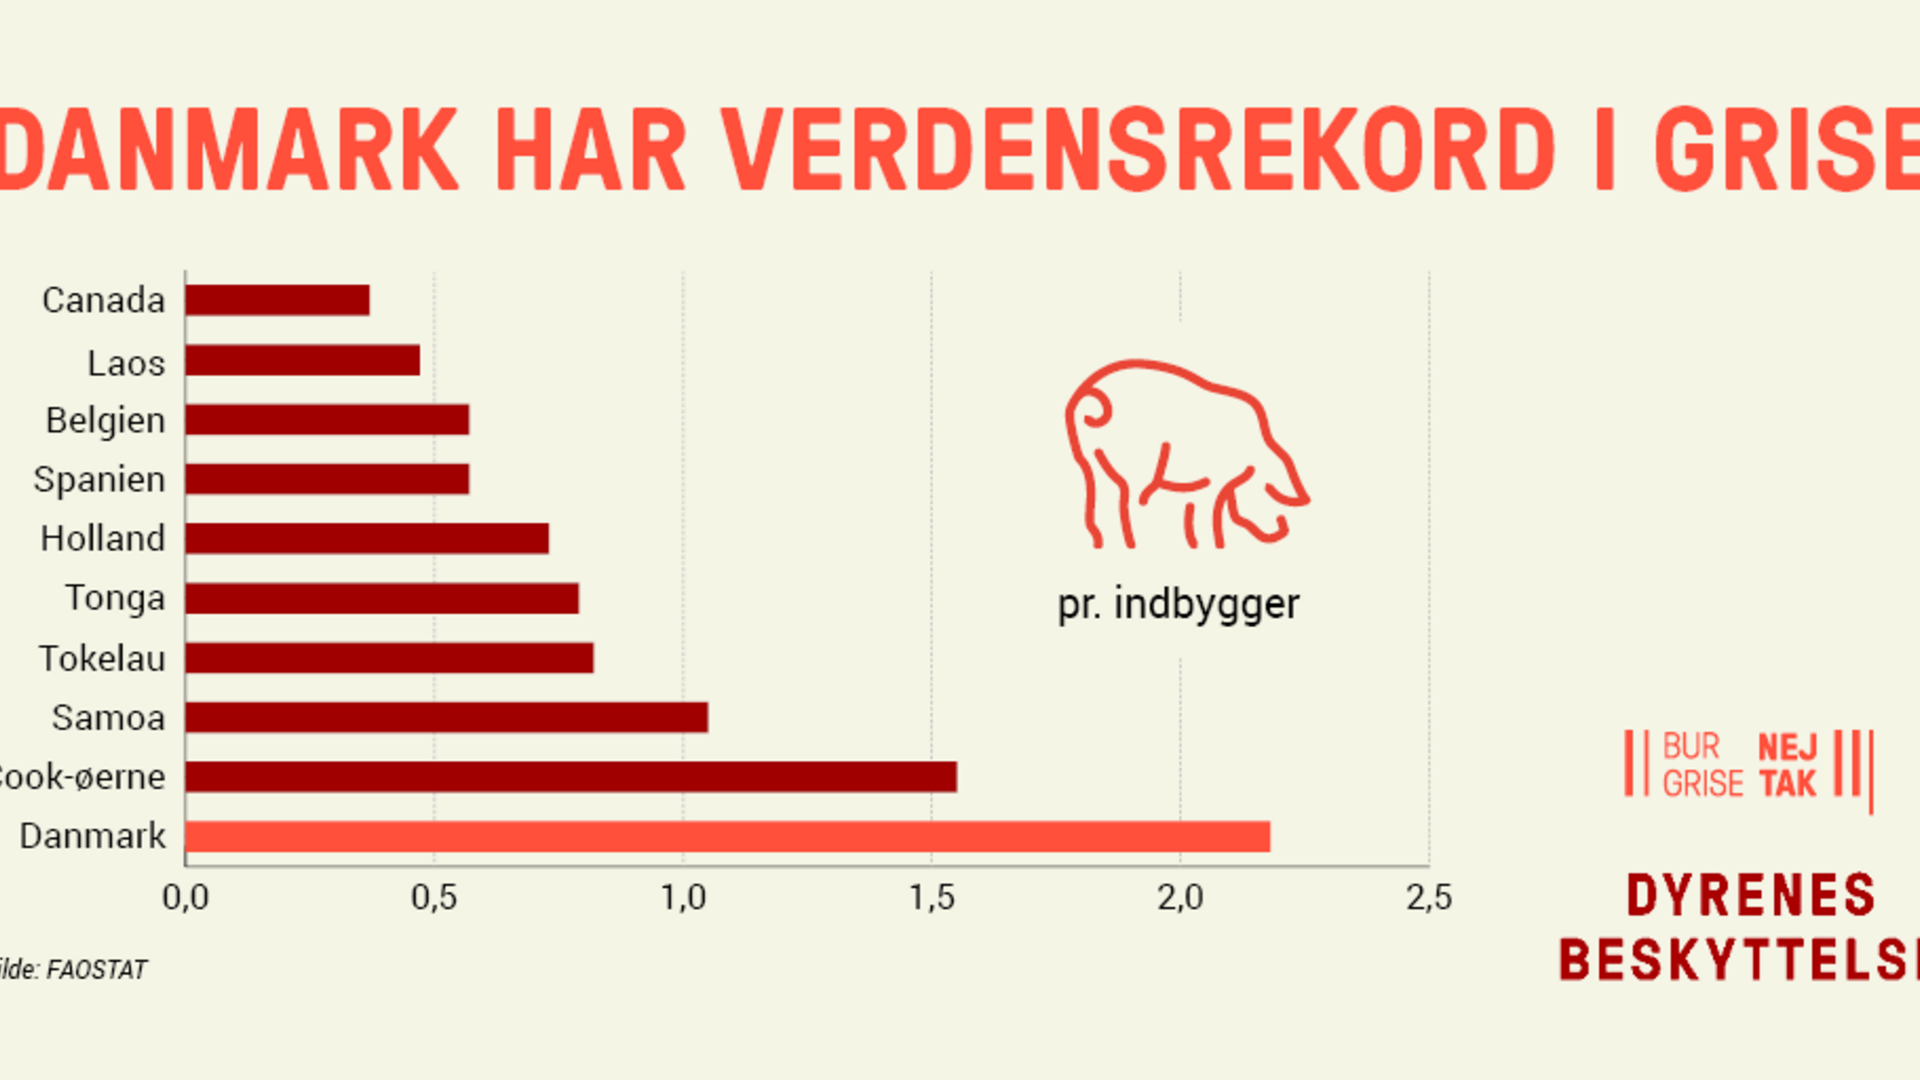 Danmark har verdensrekord i grise